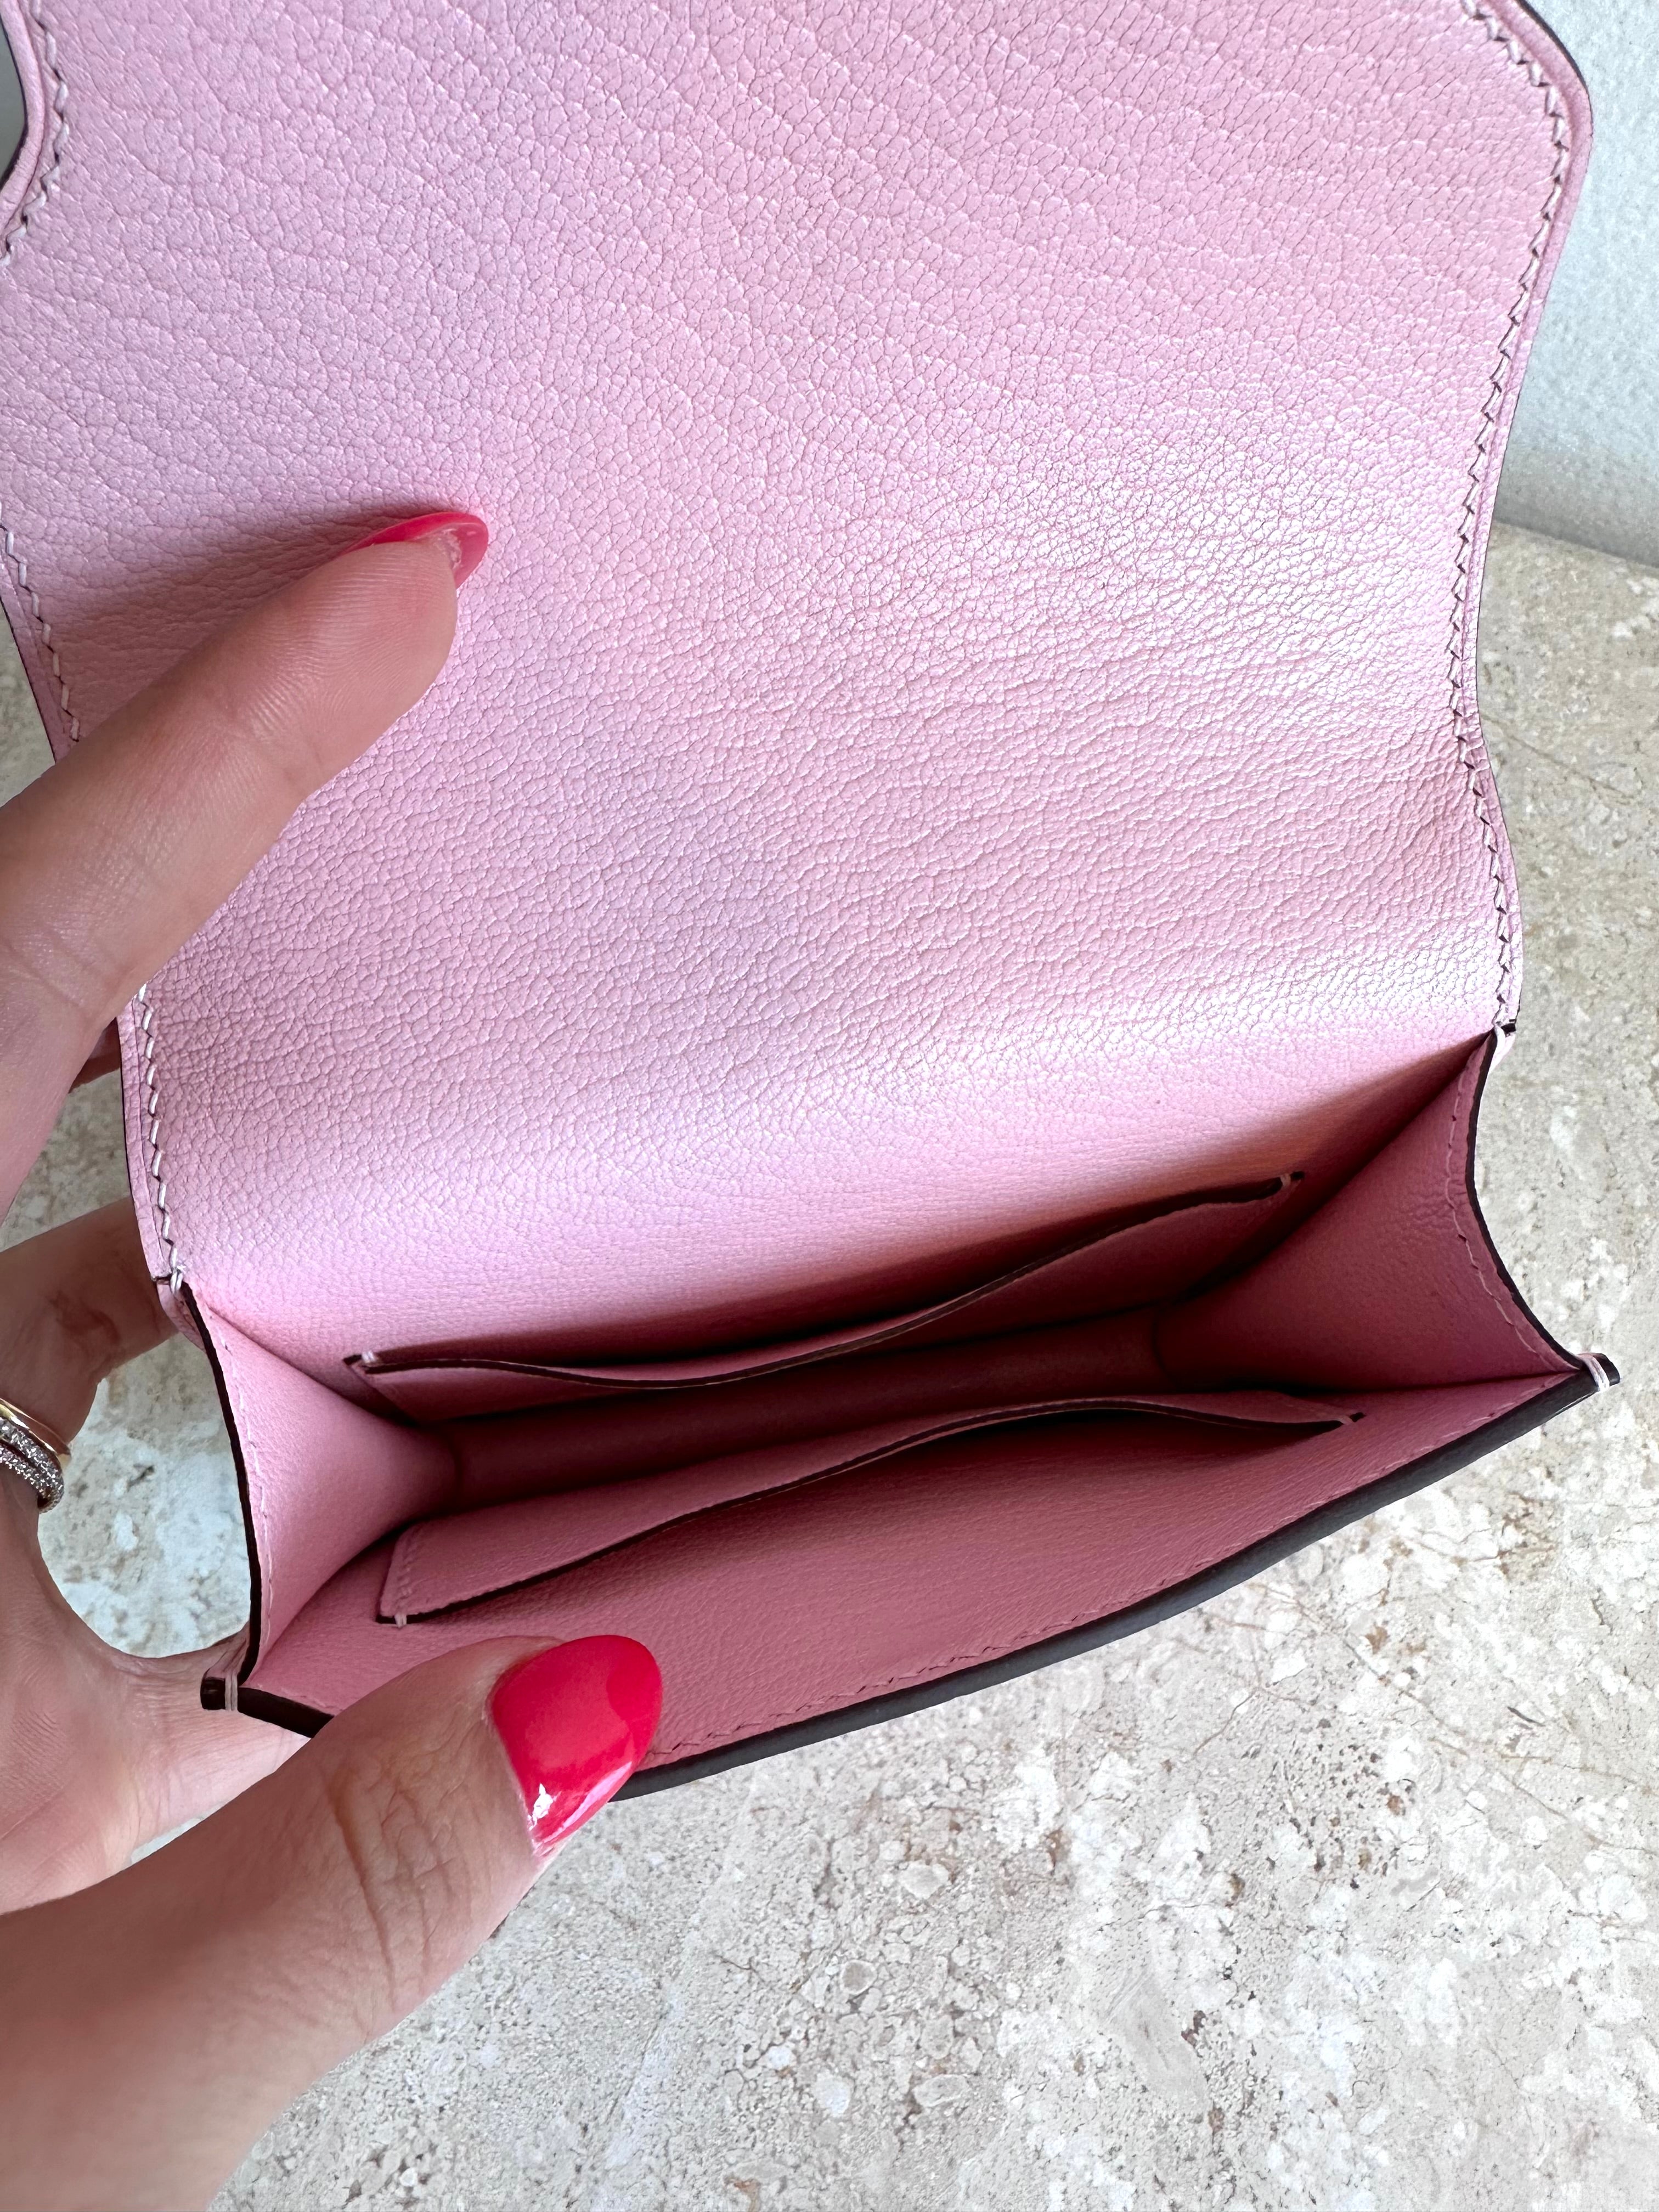 Pre-Owned HERMES Pink Roulis Slim Wallet